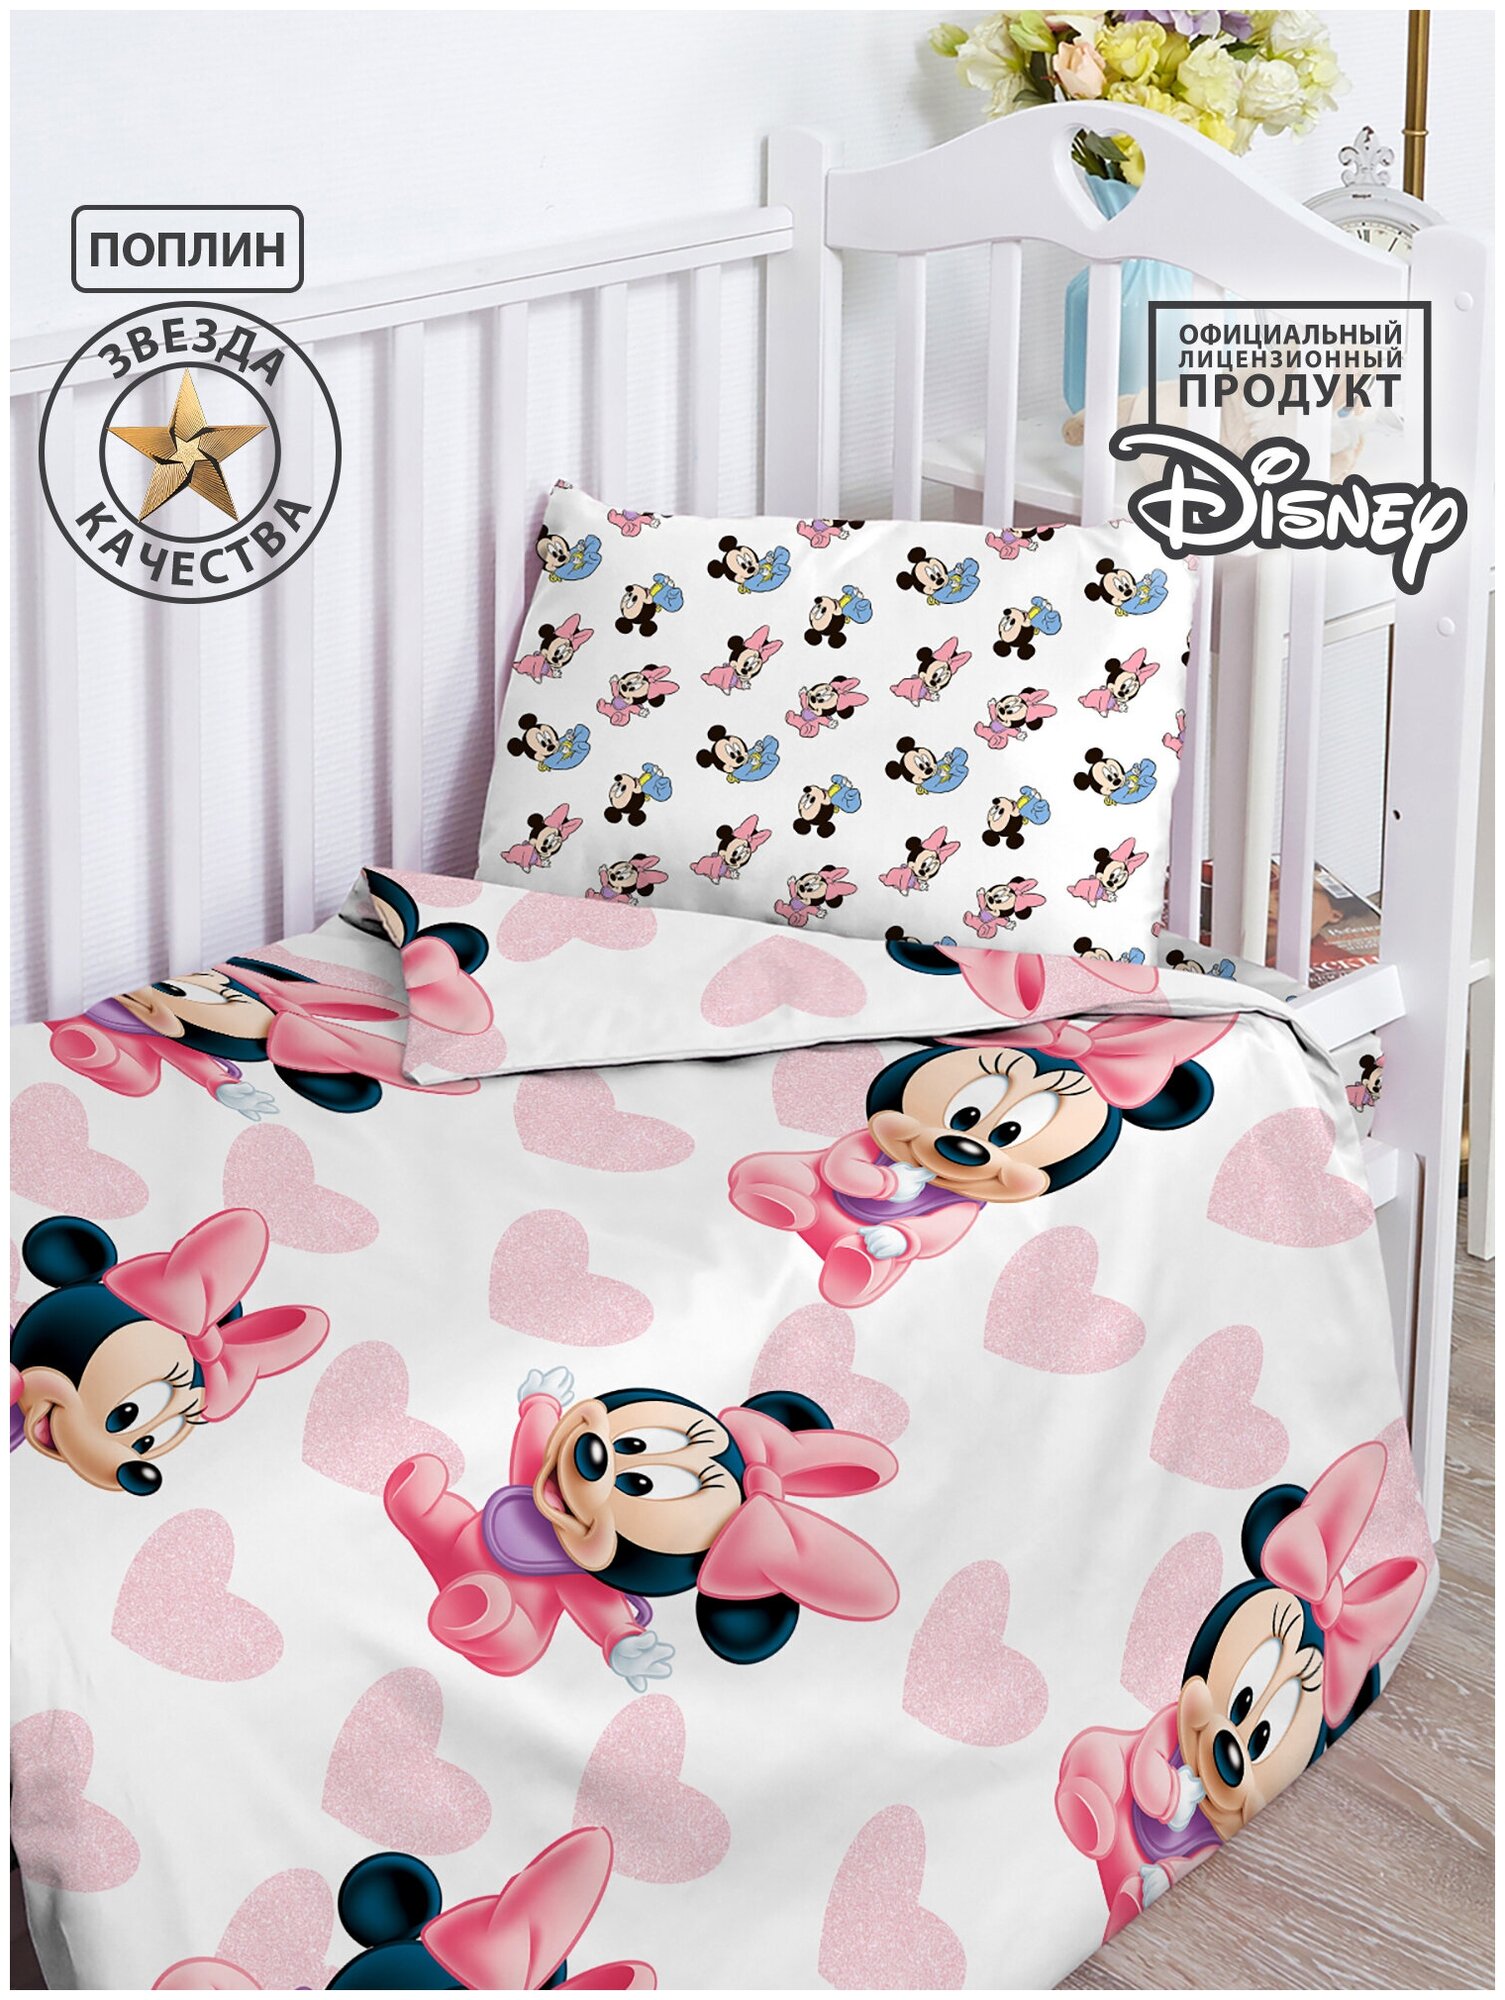 Постельное белье детское в кроватку поплин "Disney Baby" (40х60) рис. 16473-1/16474-1 Минни Маус